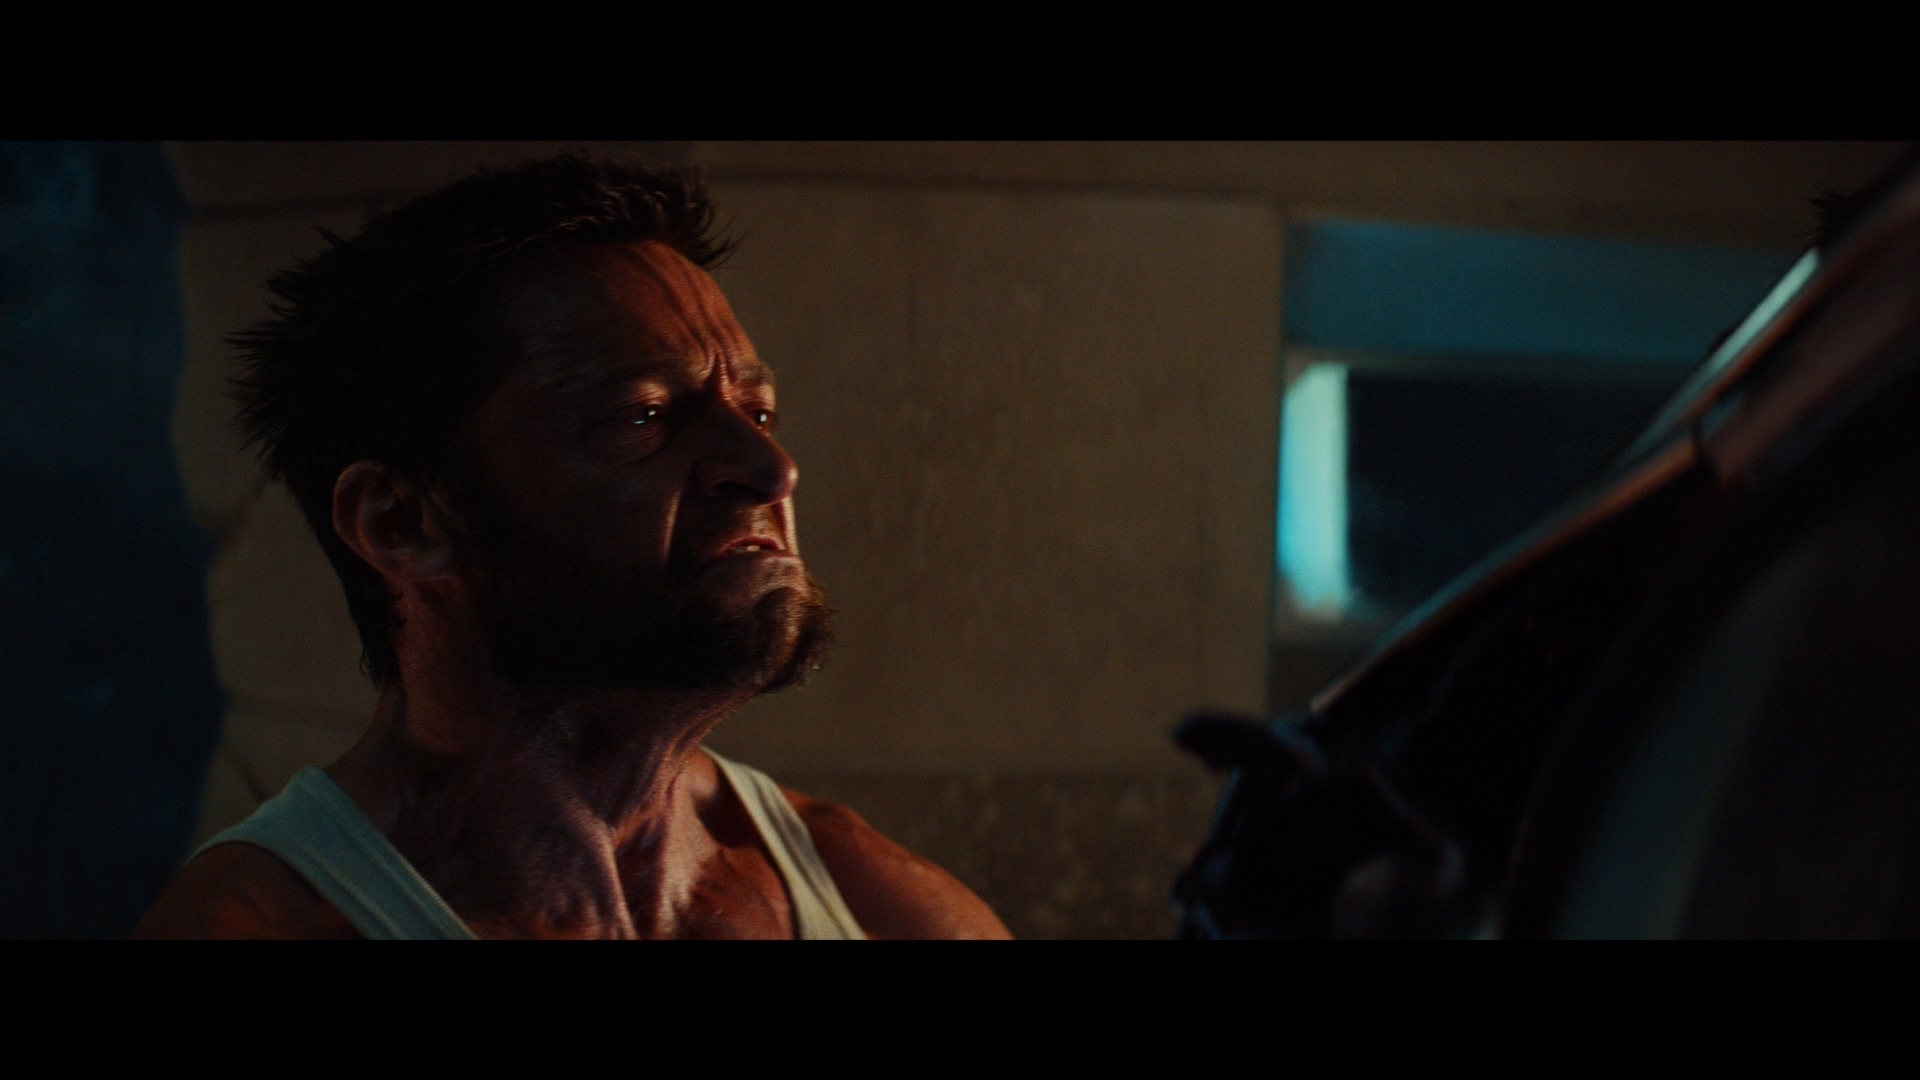 [金刚狼2].The.Wolverine.2013.3D.TW.BluRay.1080p.AVC.DTS-HD.MA.7.1-OMEGA    46.33G3 n, c6 W& S1 Y-14.jpg